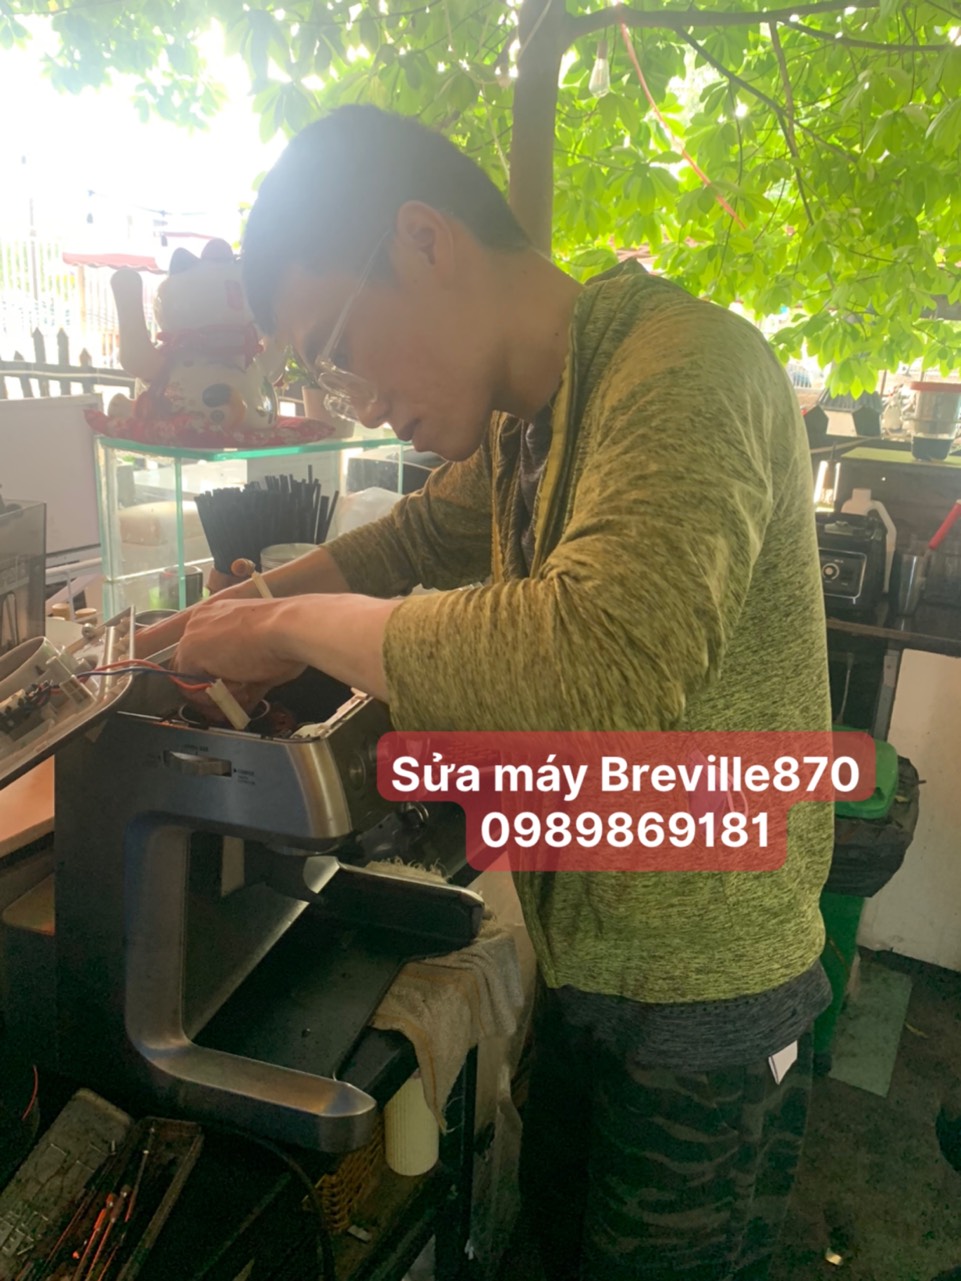 z4407191130359 e169e62c8fcbf3a92697e72de0a51c34 - Sửa máy cafe Breville không xay được tại TP. Hồ Chí Minh